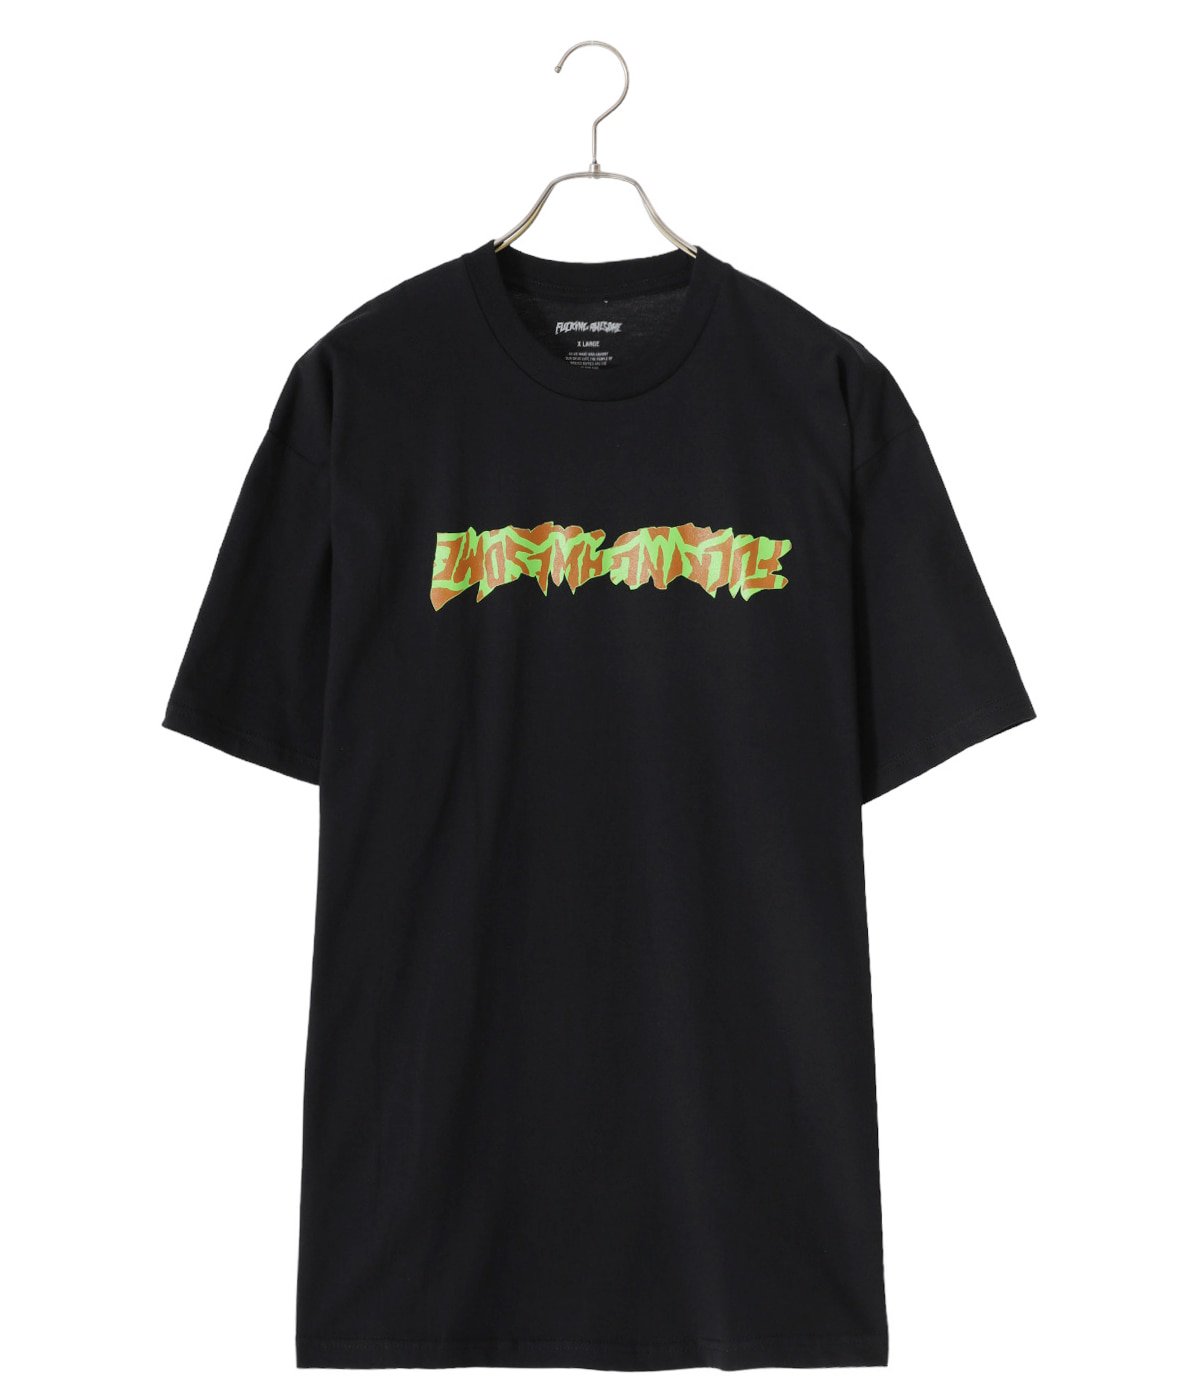 【完売品】 Fucking awesome tシャツ ブラック ワンポイントロゴ